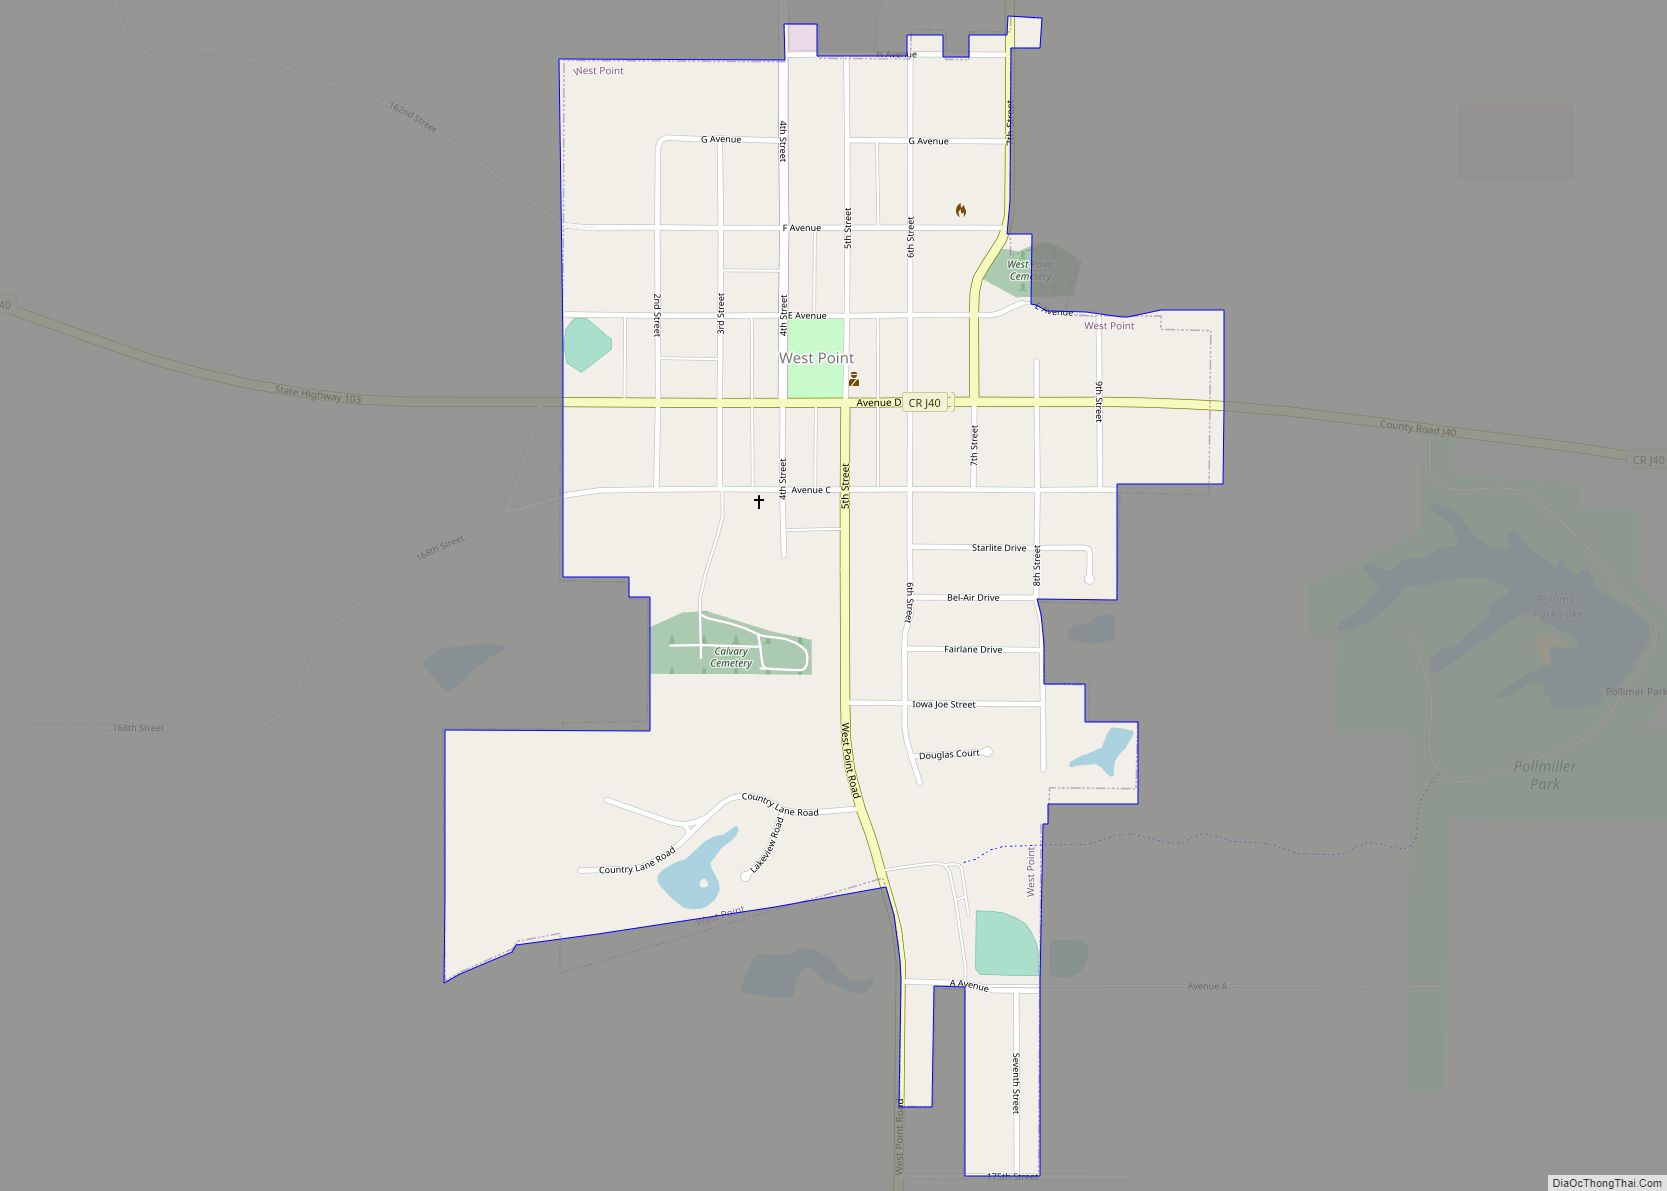 Map of West Point city, Iowa